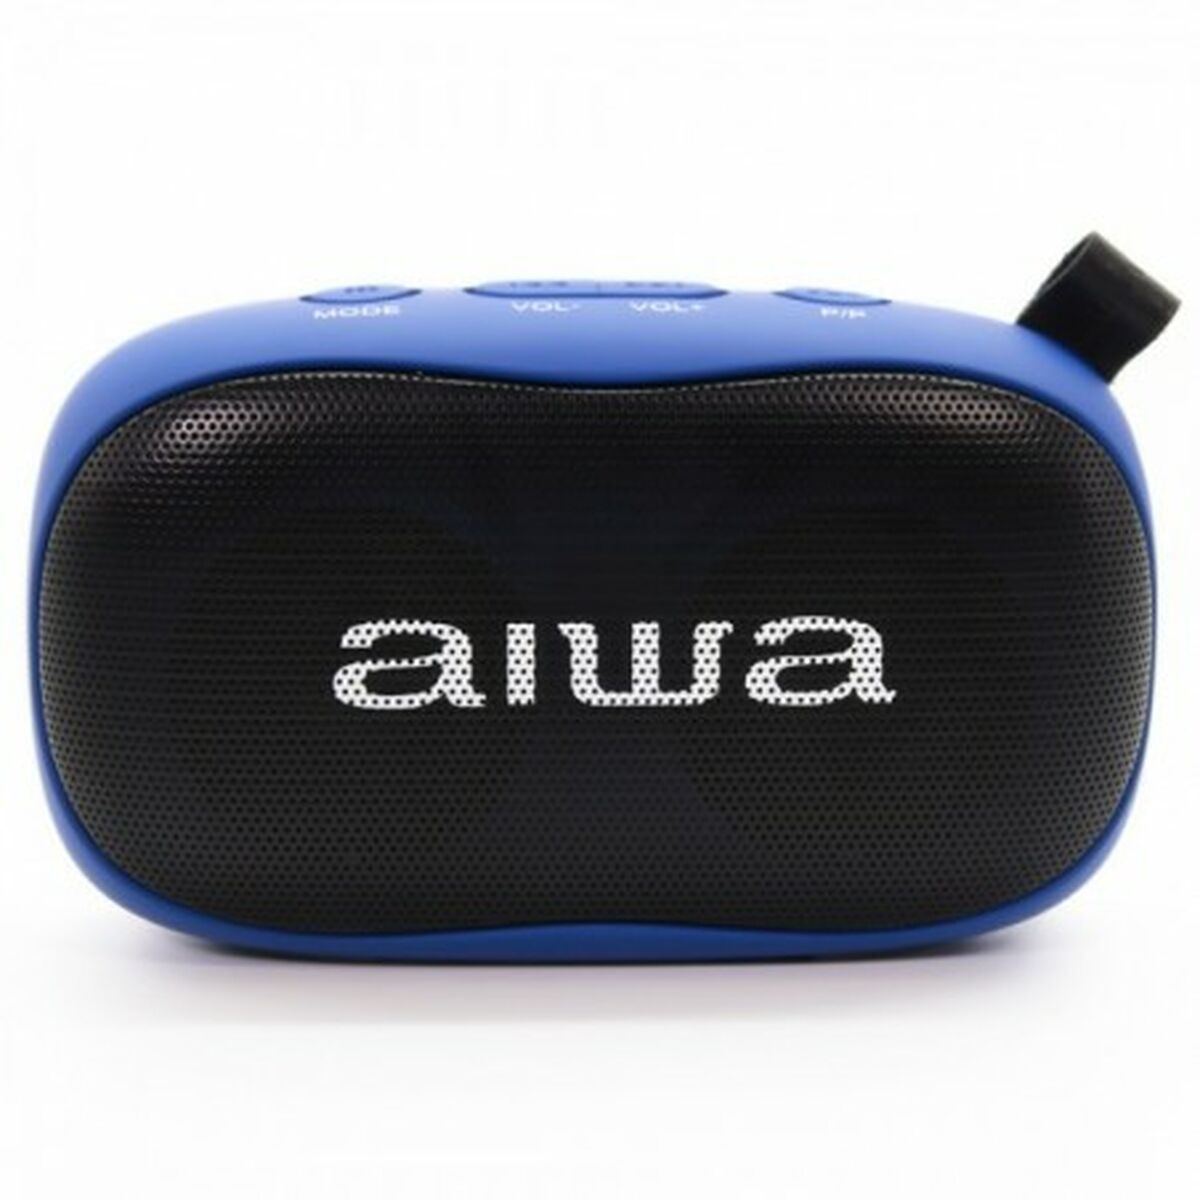 Tragbare Bluetooth-Lautsprecher Aiwa BS110BL     10W 10W Blau 5 W